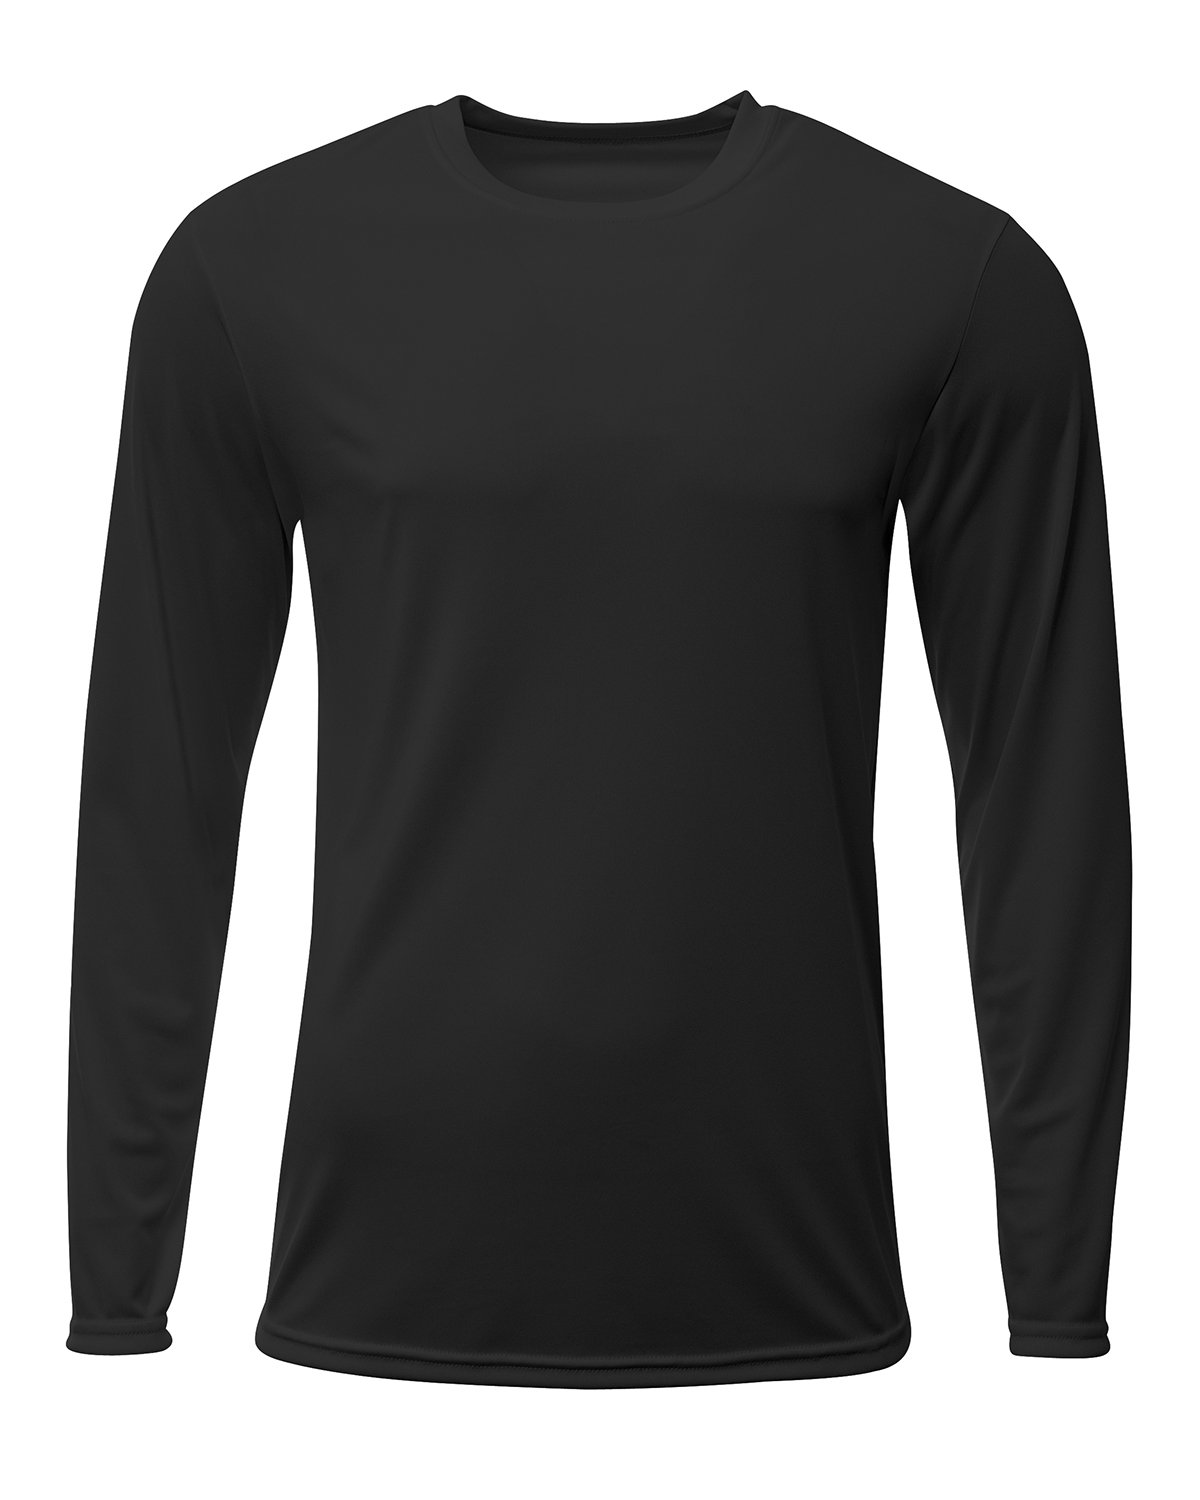 A4 Men's Sprint Long Sleeve T-Shirt BLACK 